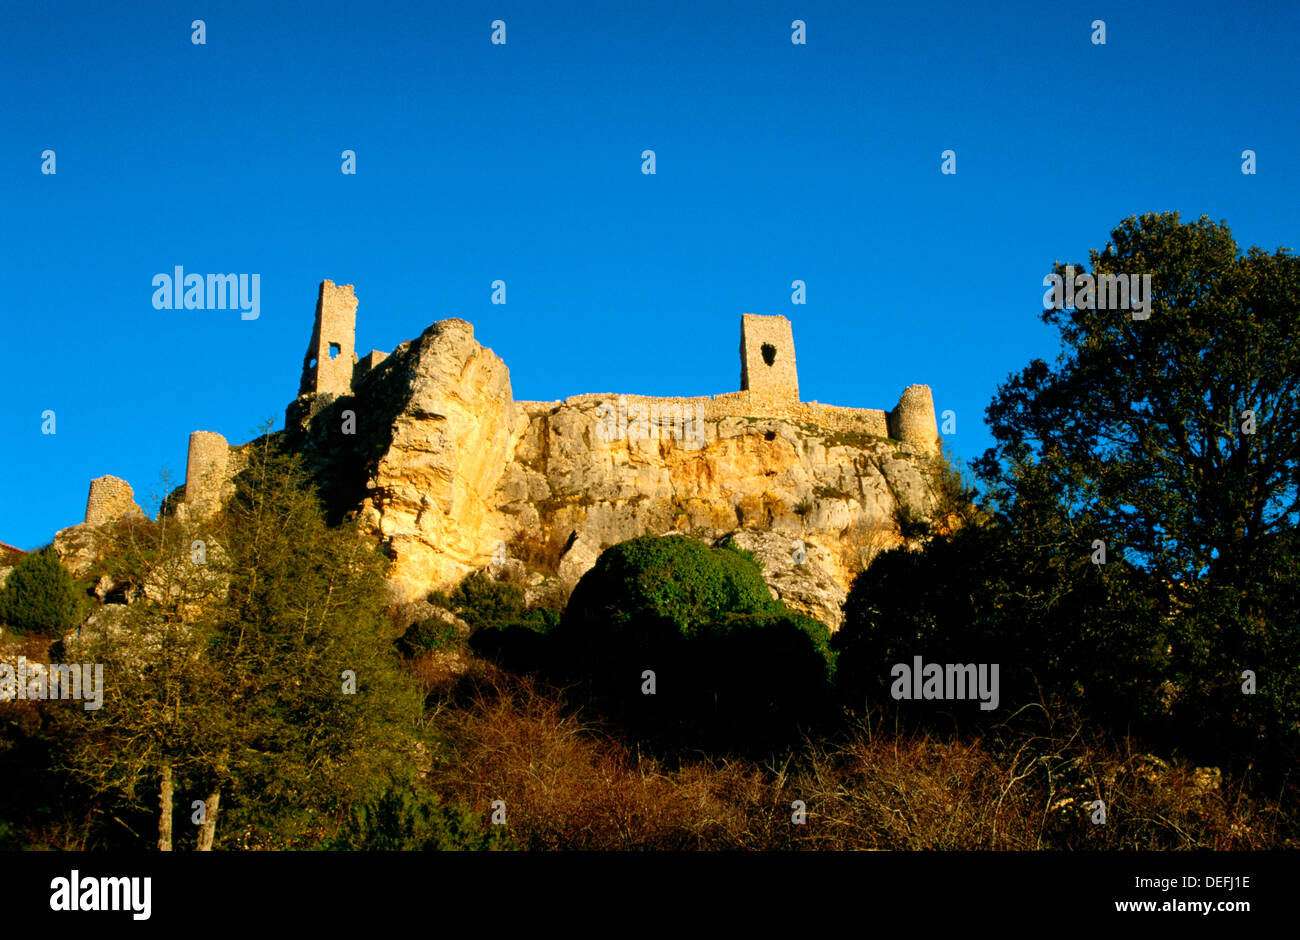 Château et enceinte médiévale (14ème siècle). Calatañazor. La province de Soria. Espagne Banque D'Images